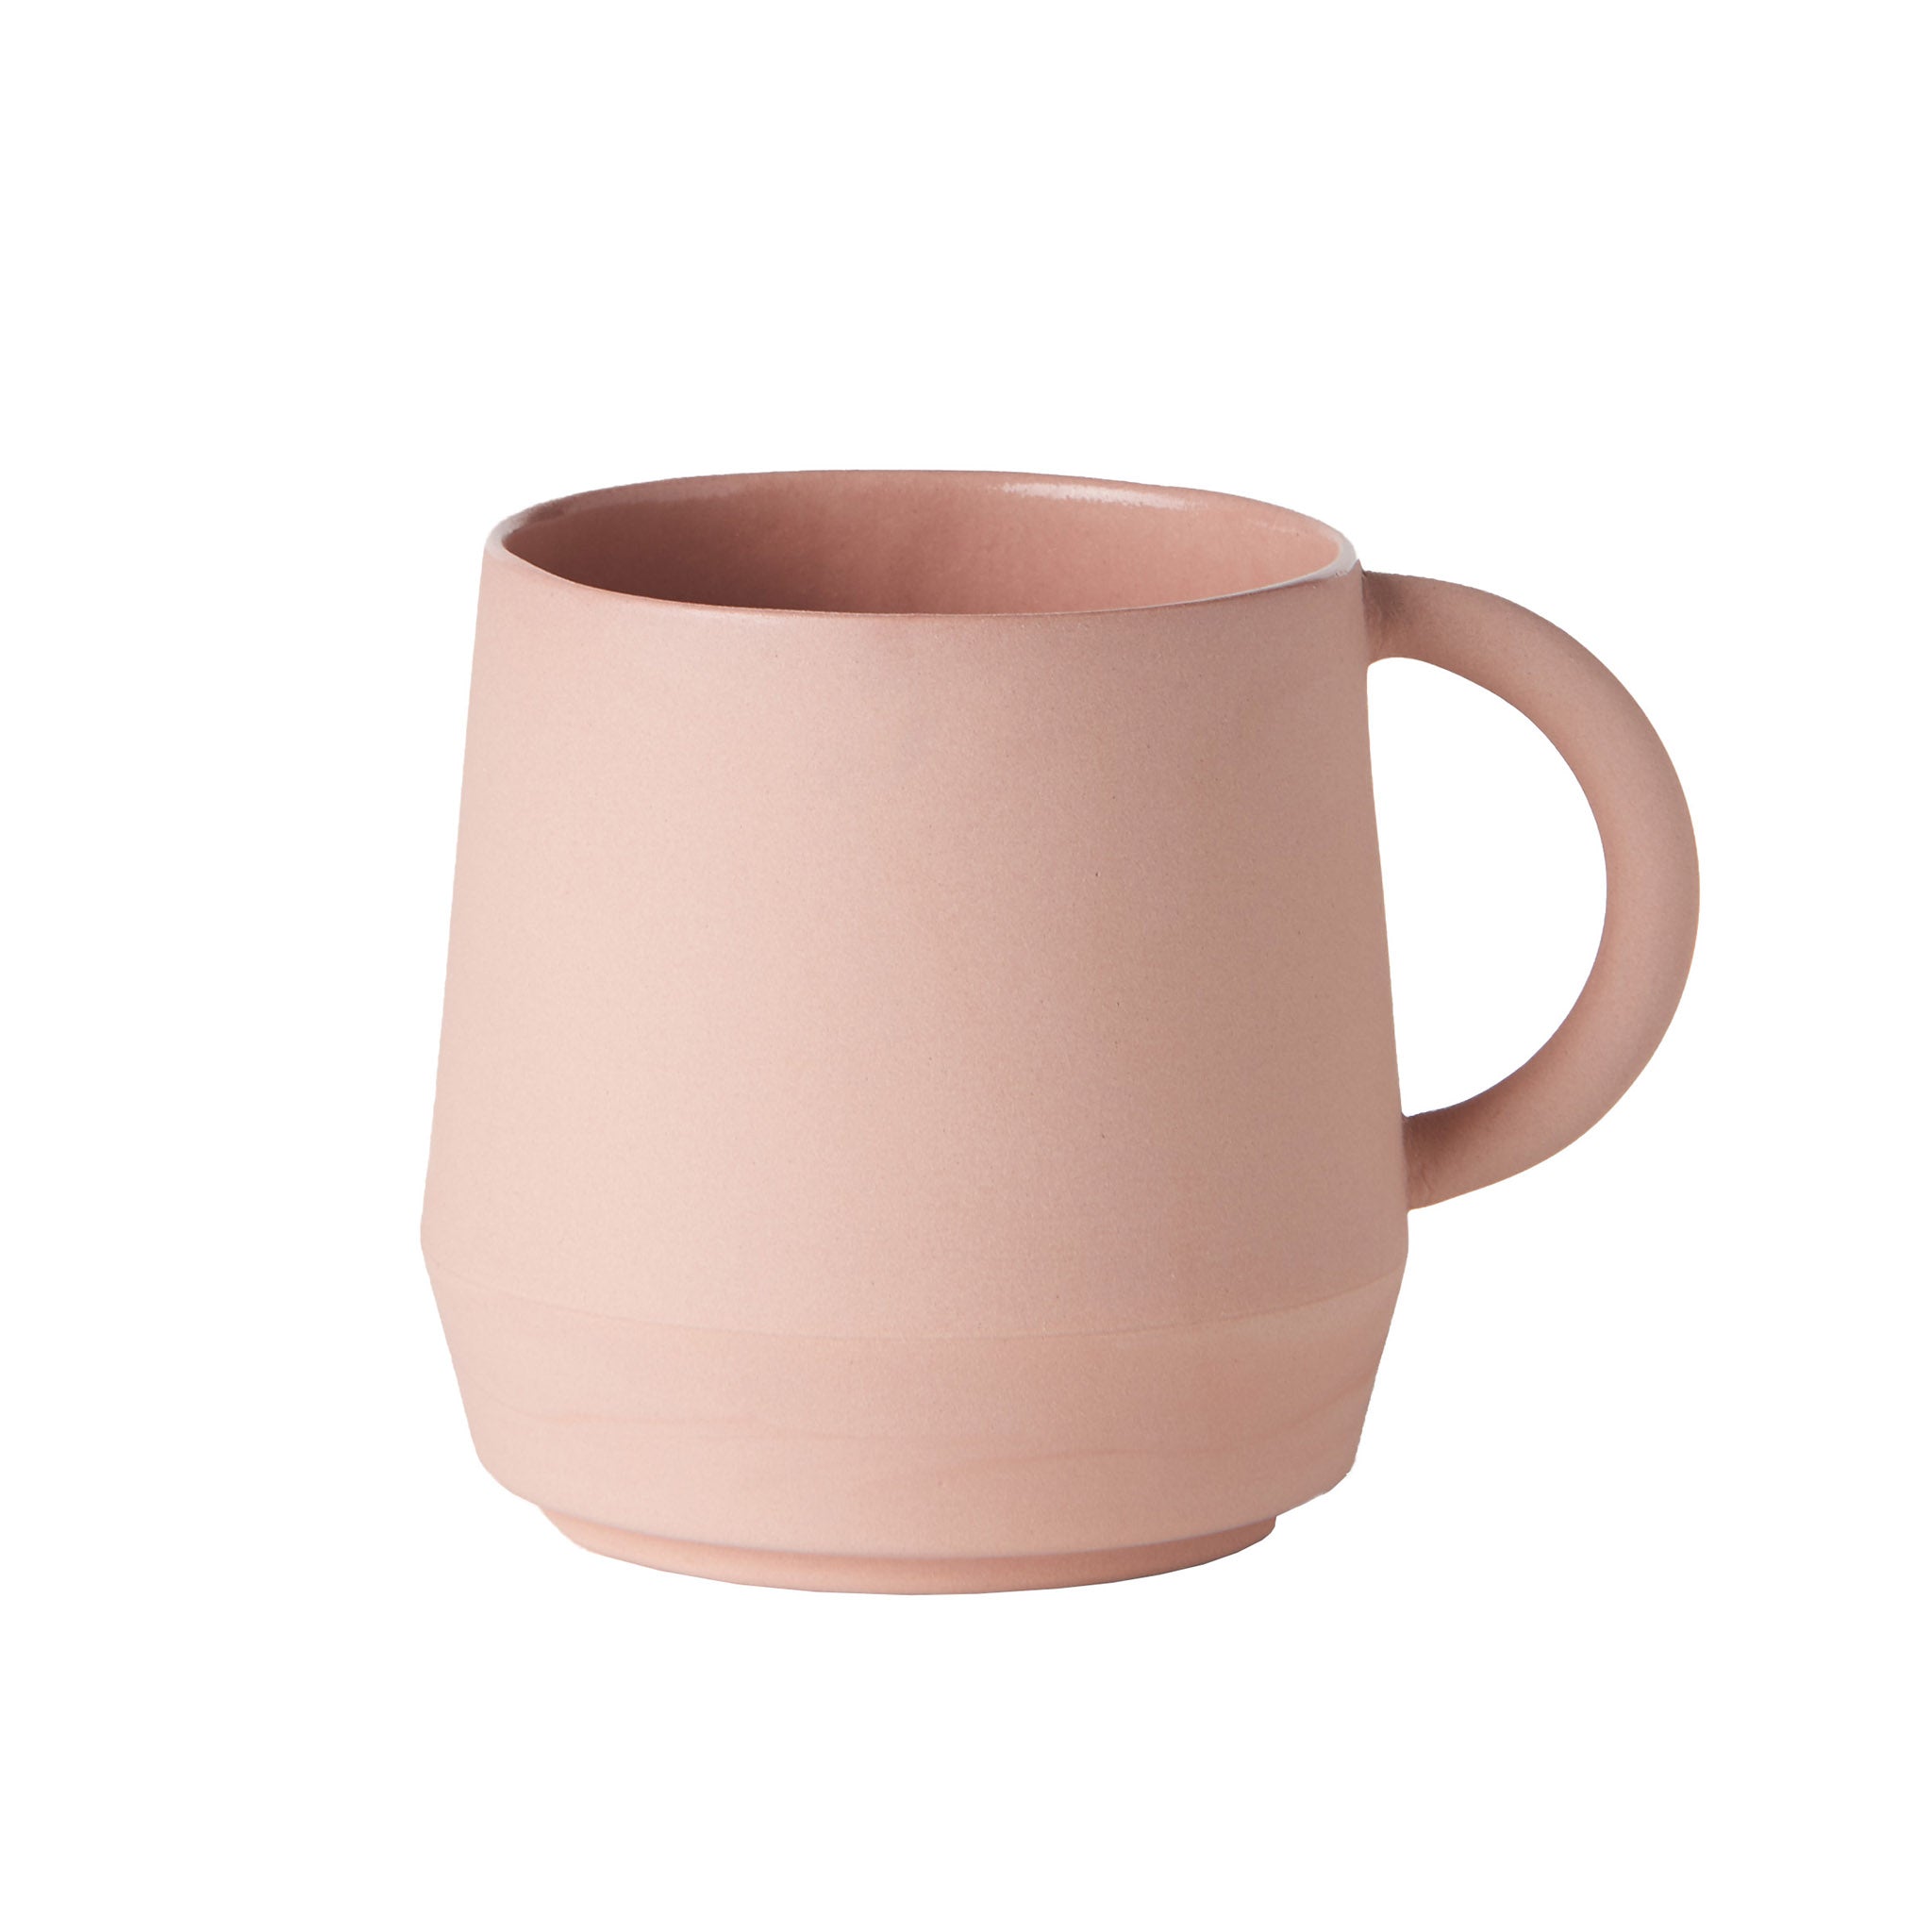 Unison Keramik Tasse von Schneid Studio in der Farbe Koralle